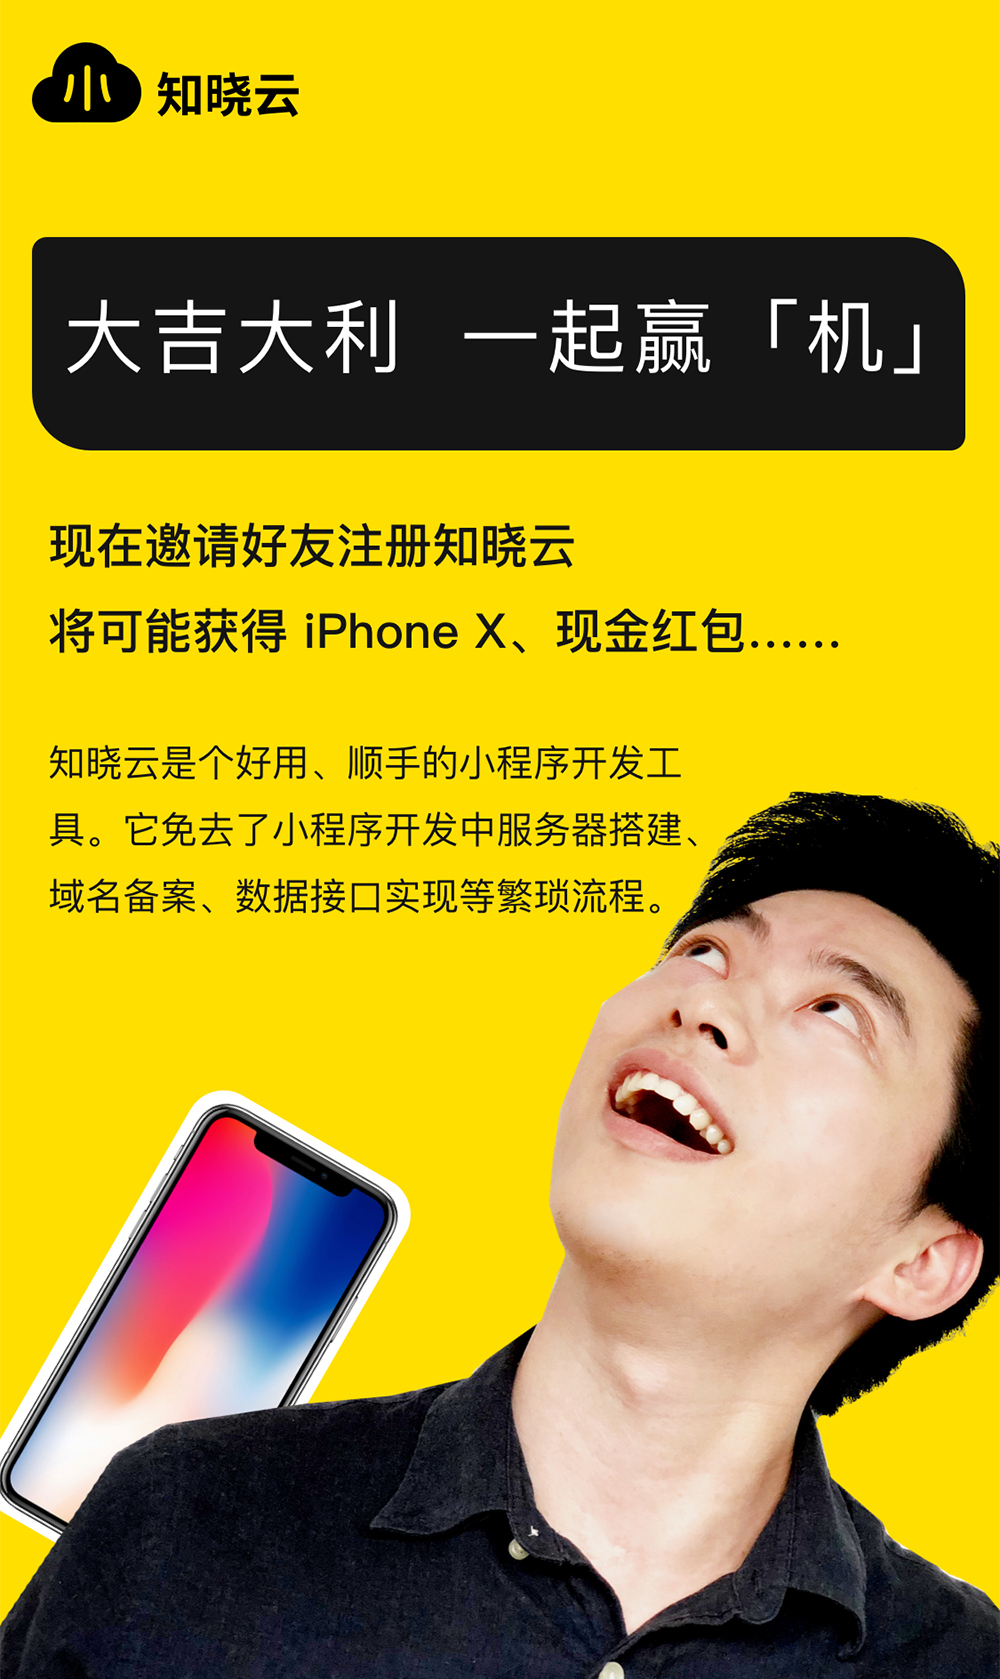 晓云邀请福利上线,开发小程序,还送 iPhone X -